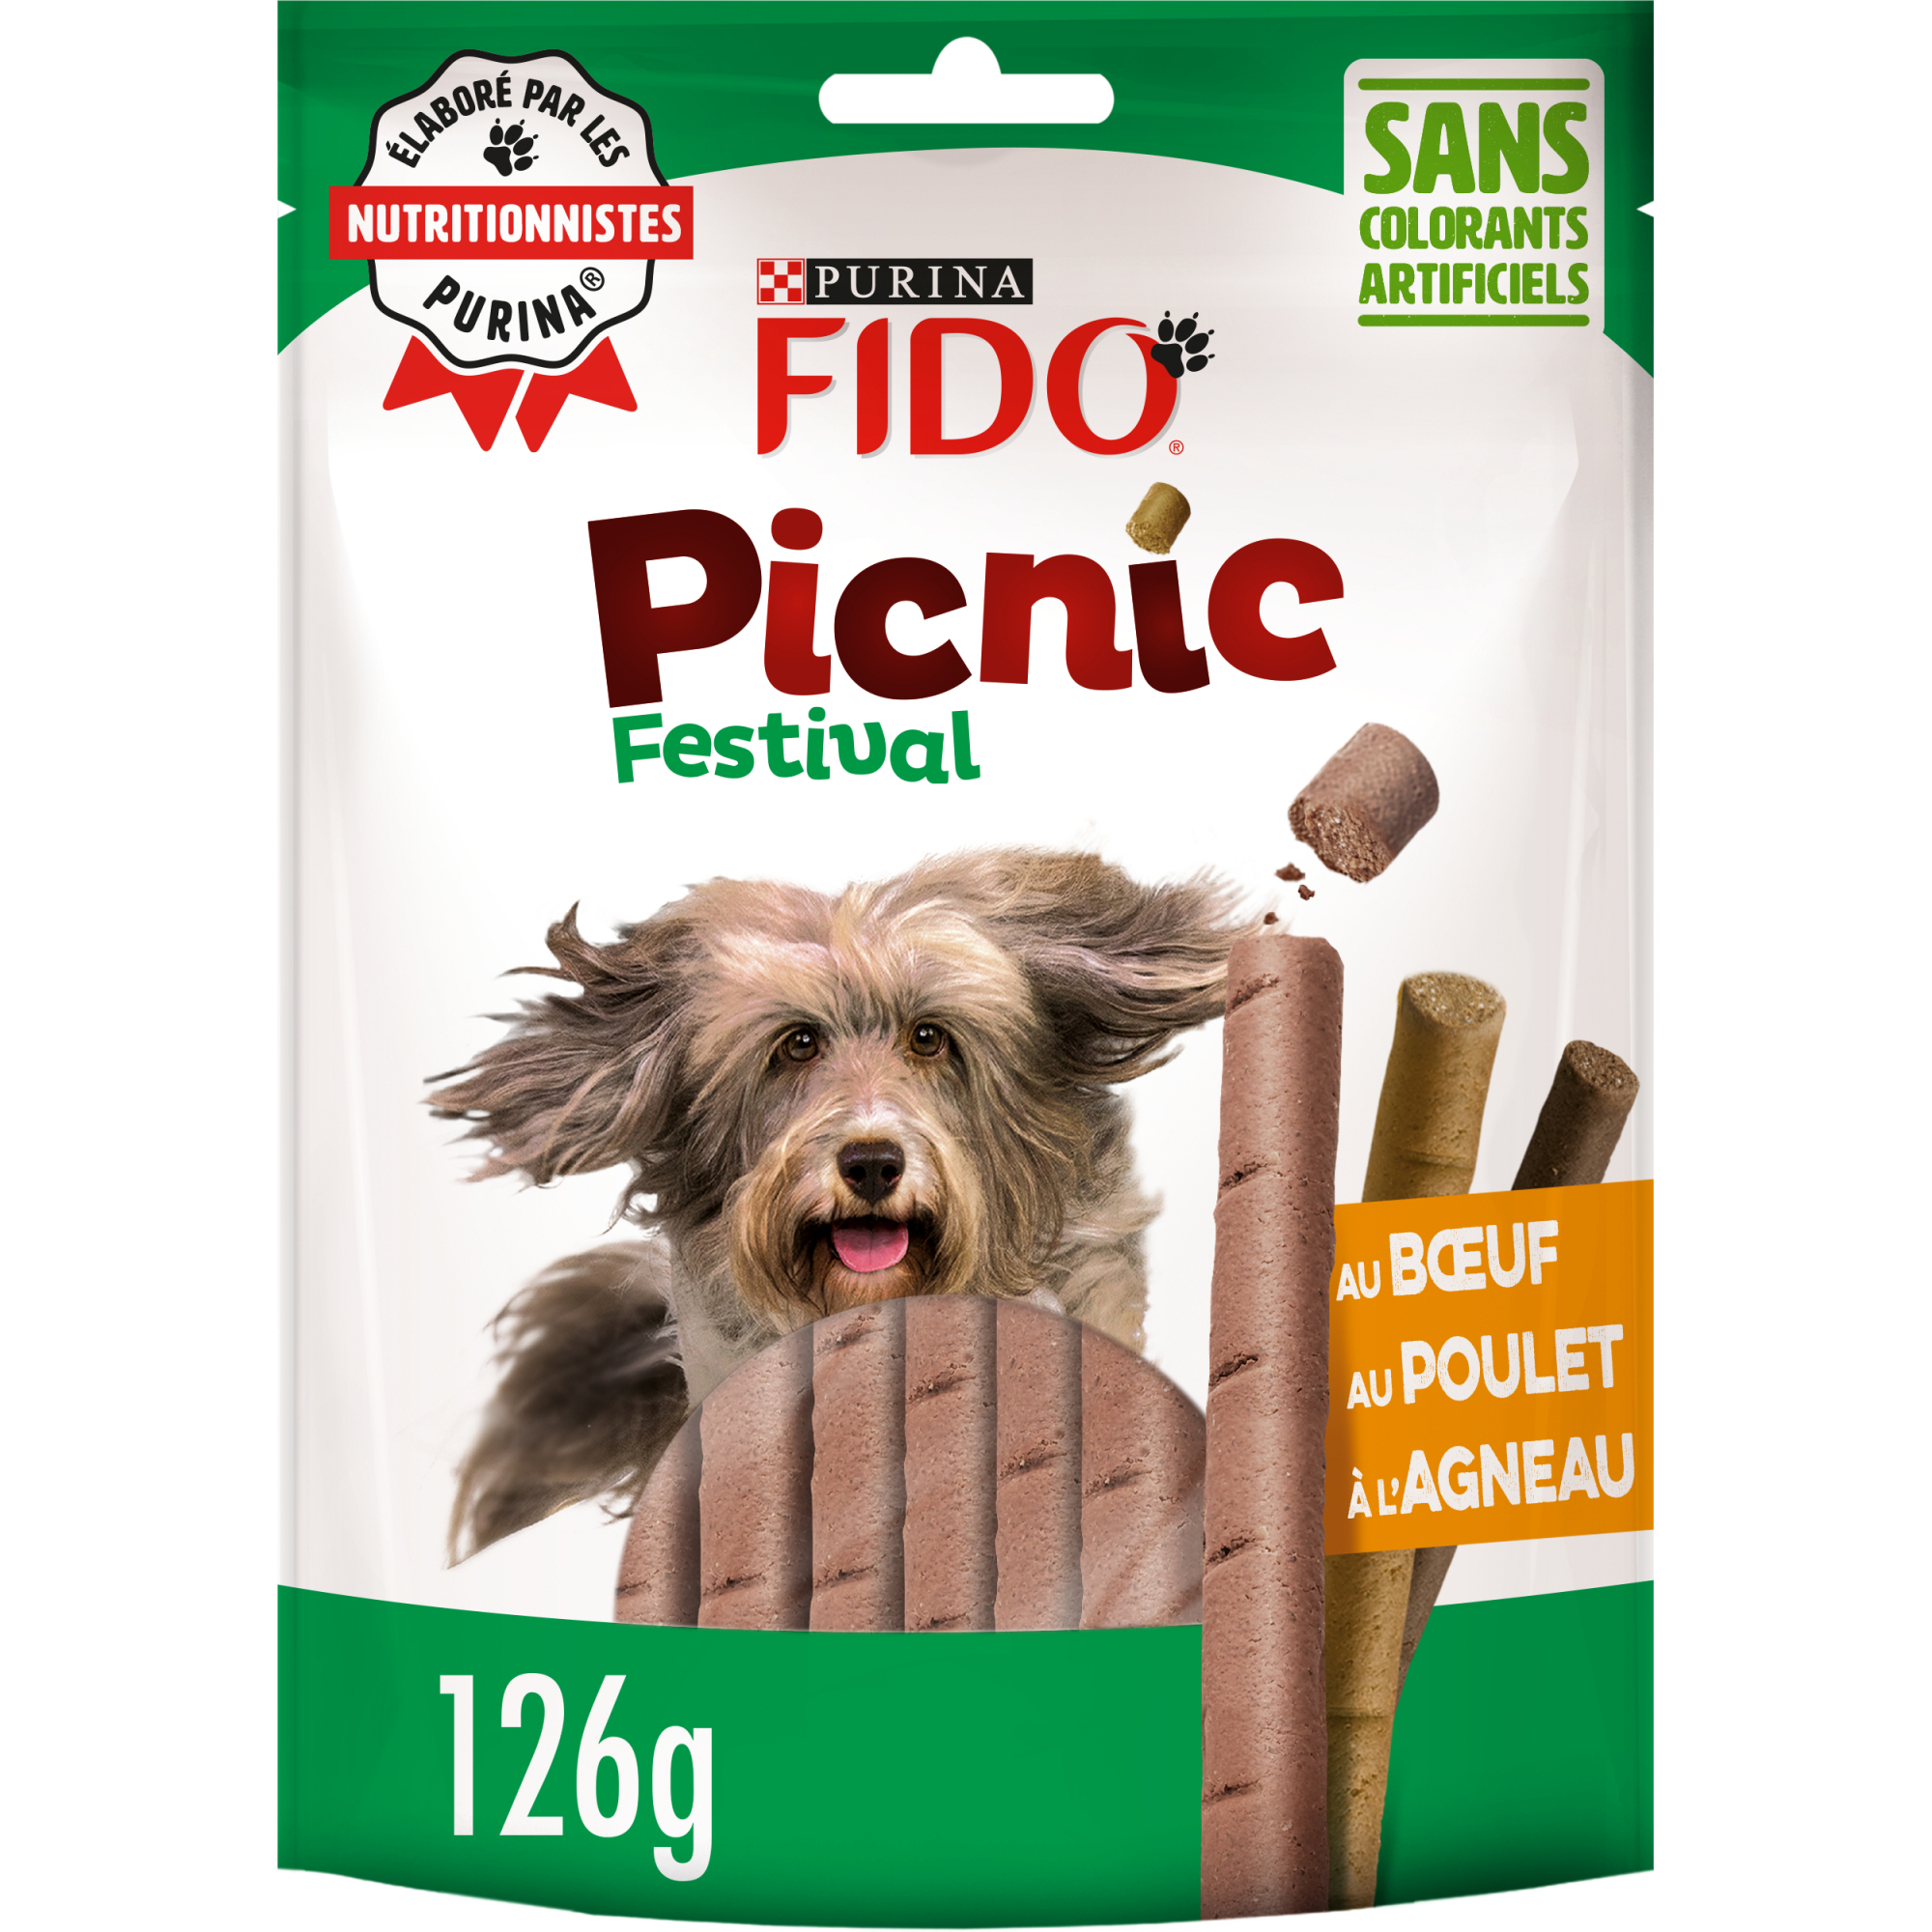 FIDO Picnic - 2 sabores